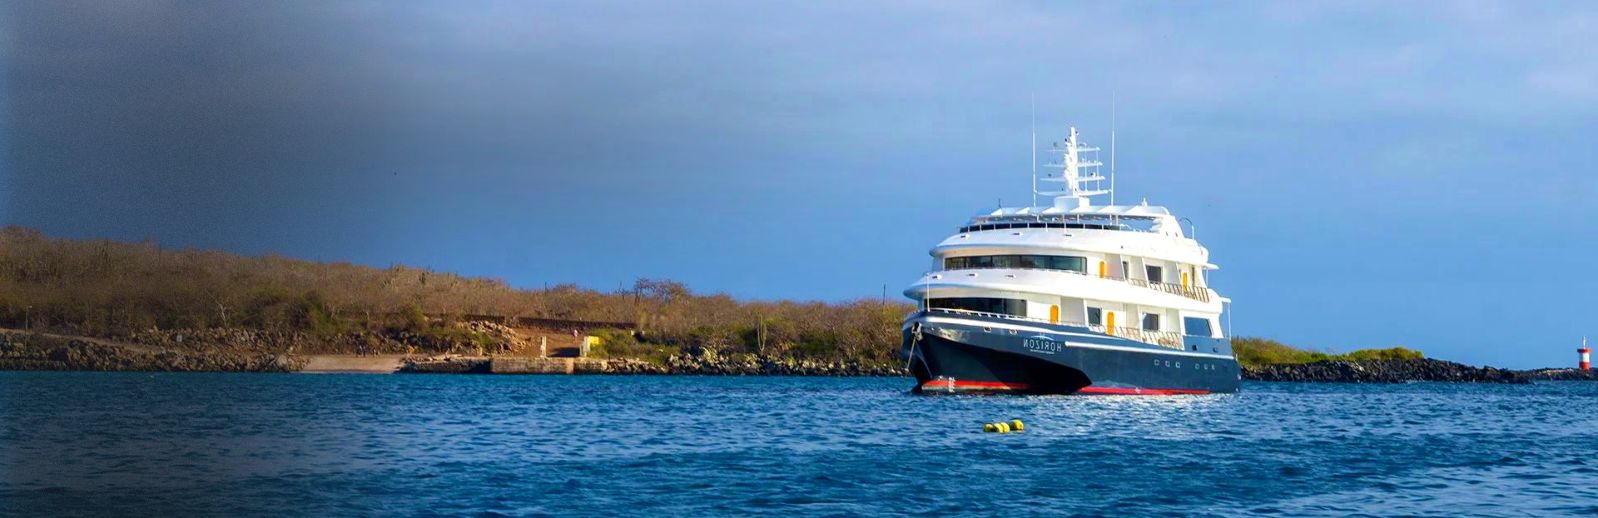 Galapagos Horizon Cruise